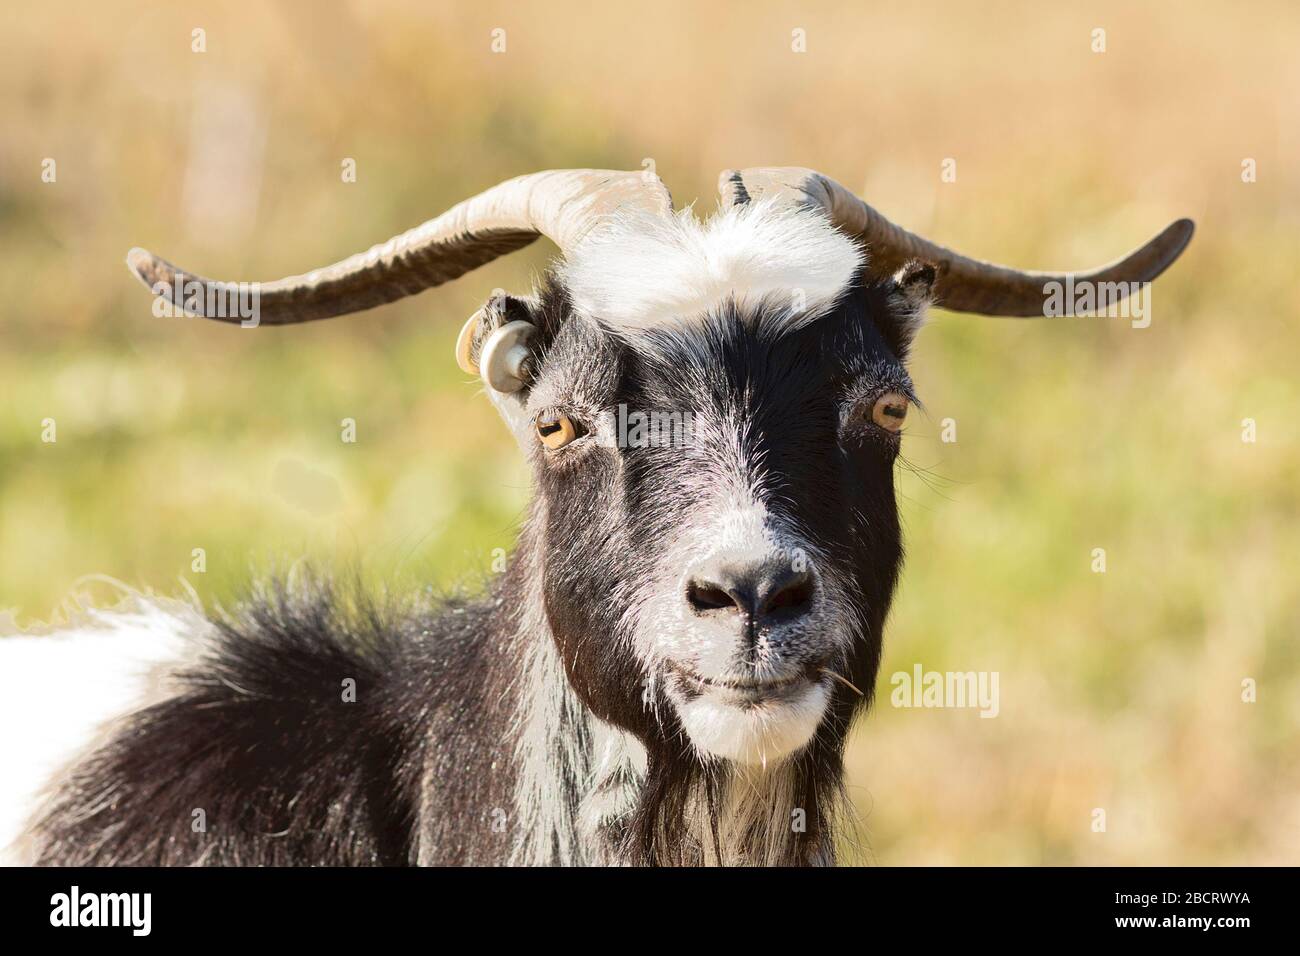 joli portrait de chèvre billy, animal domestique regardant l'appareil photo Banque D'Images